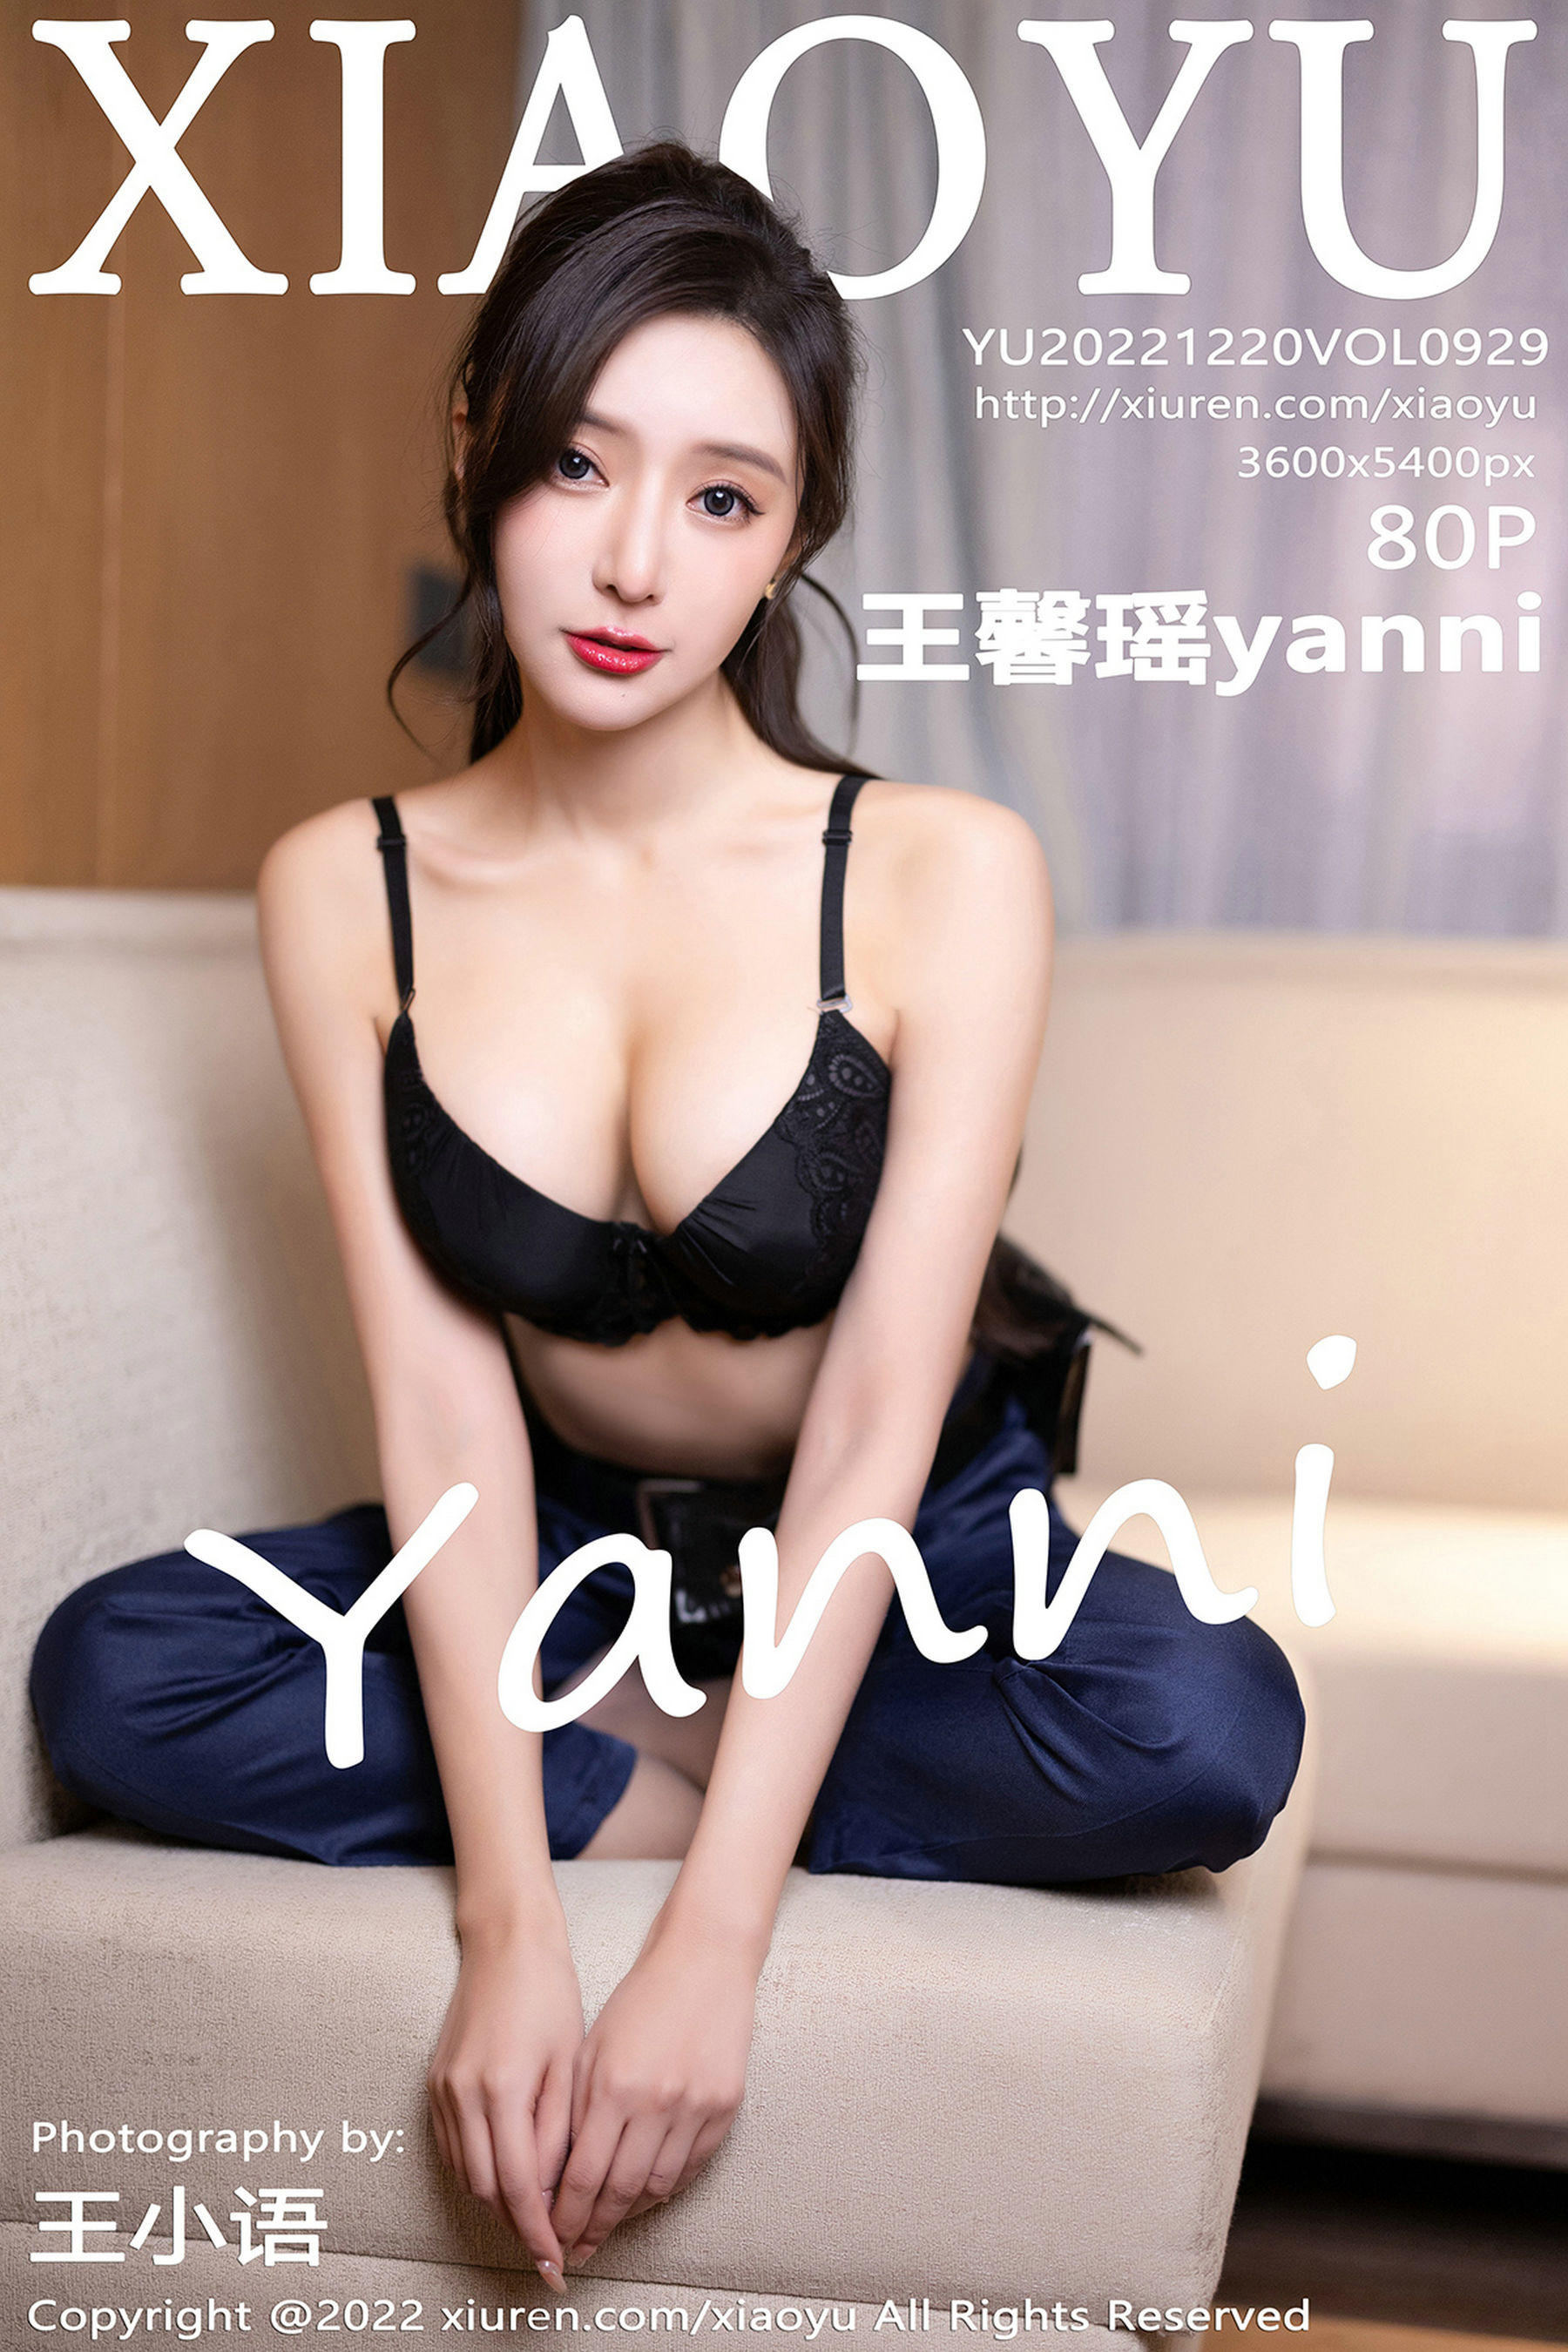 [语画界XIAOYU] Vol.929 王馨瑶yanni/(81P)